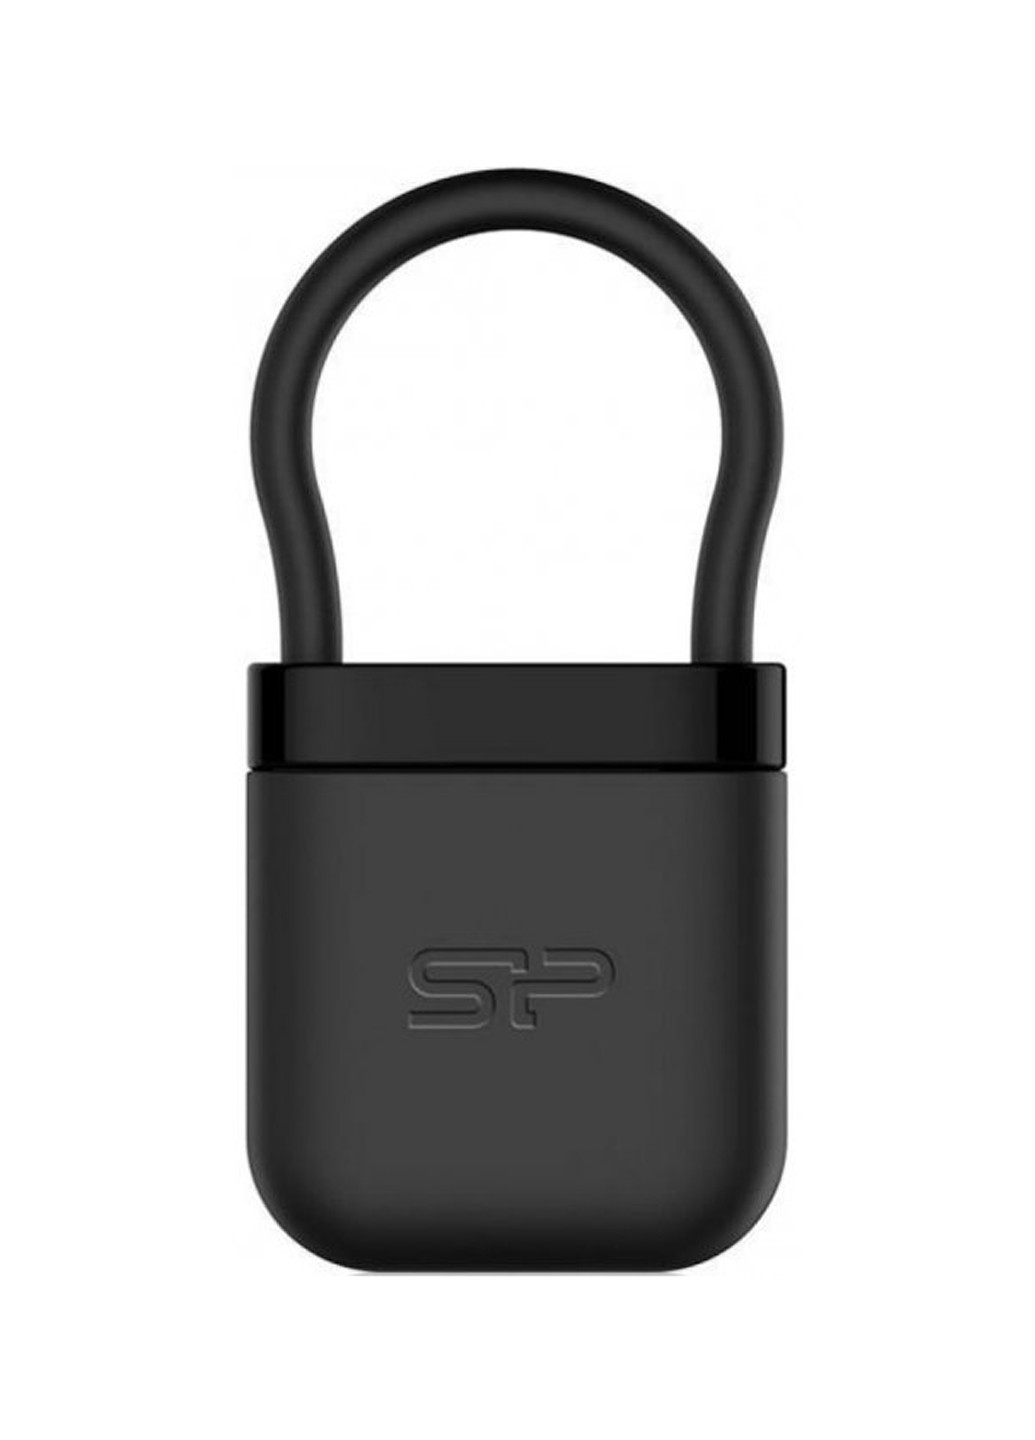 Флеш память USB Jewel J05 16GB Black (SP016GBUF3J05V1K) Silicon Power флеш память usb silicon power jewel j05 16gb black (sp016gbuf3j05v1k) (132007777)